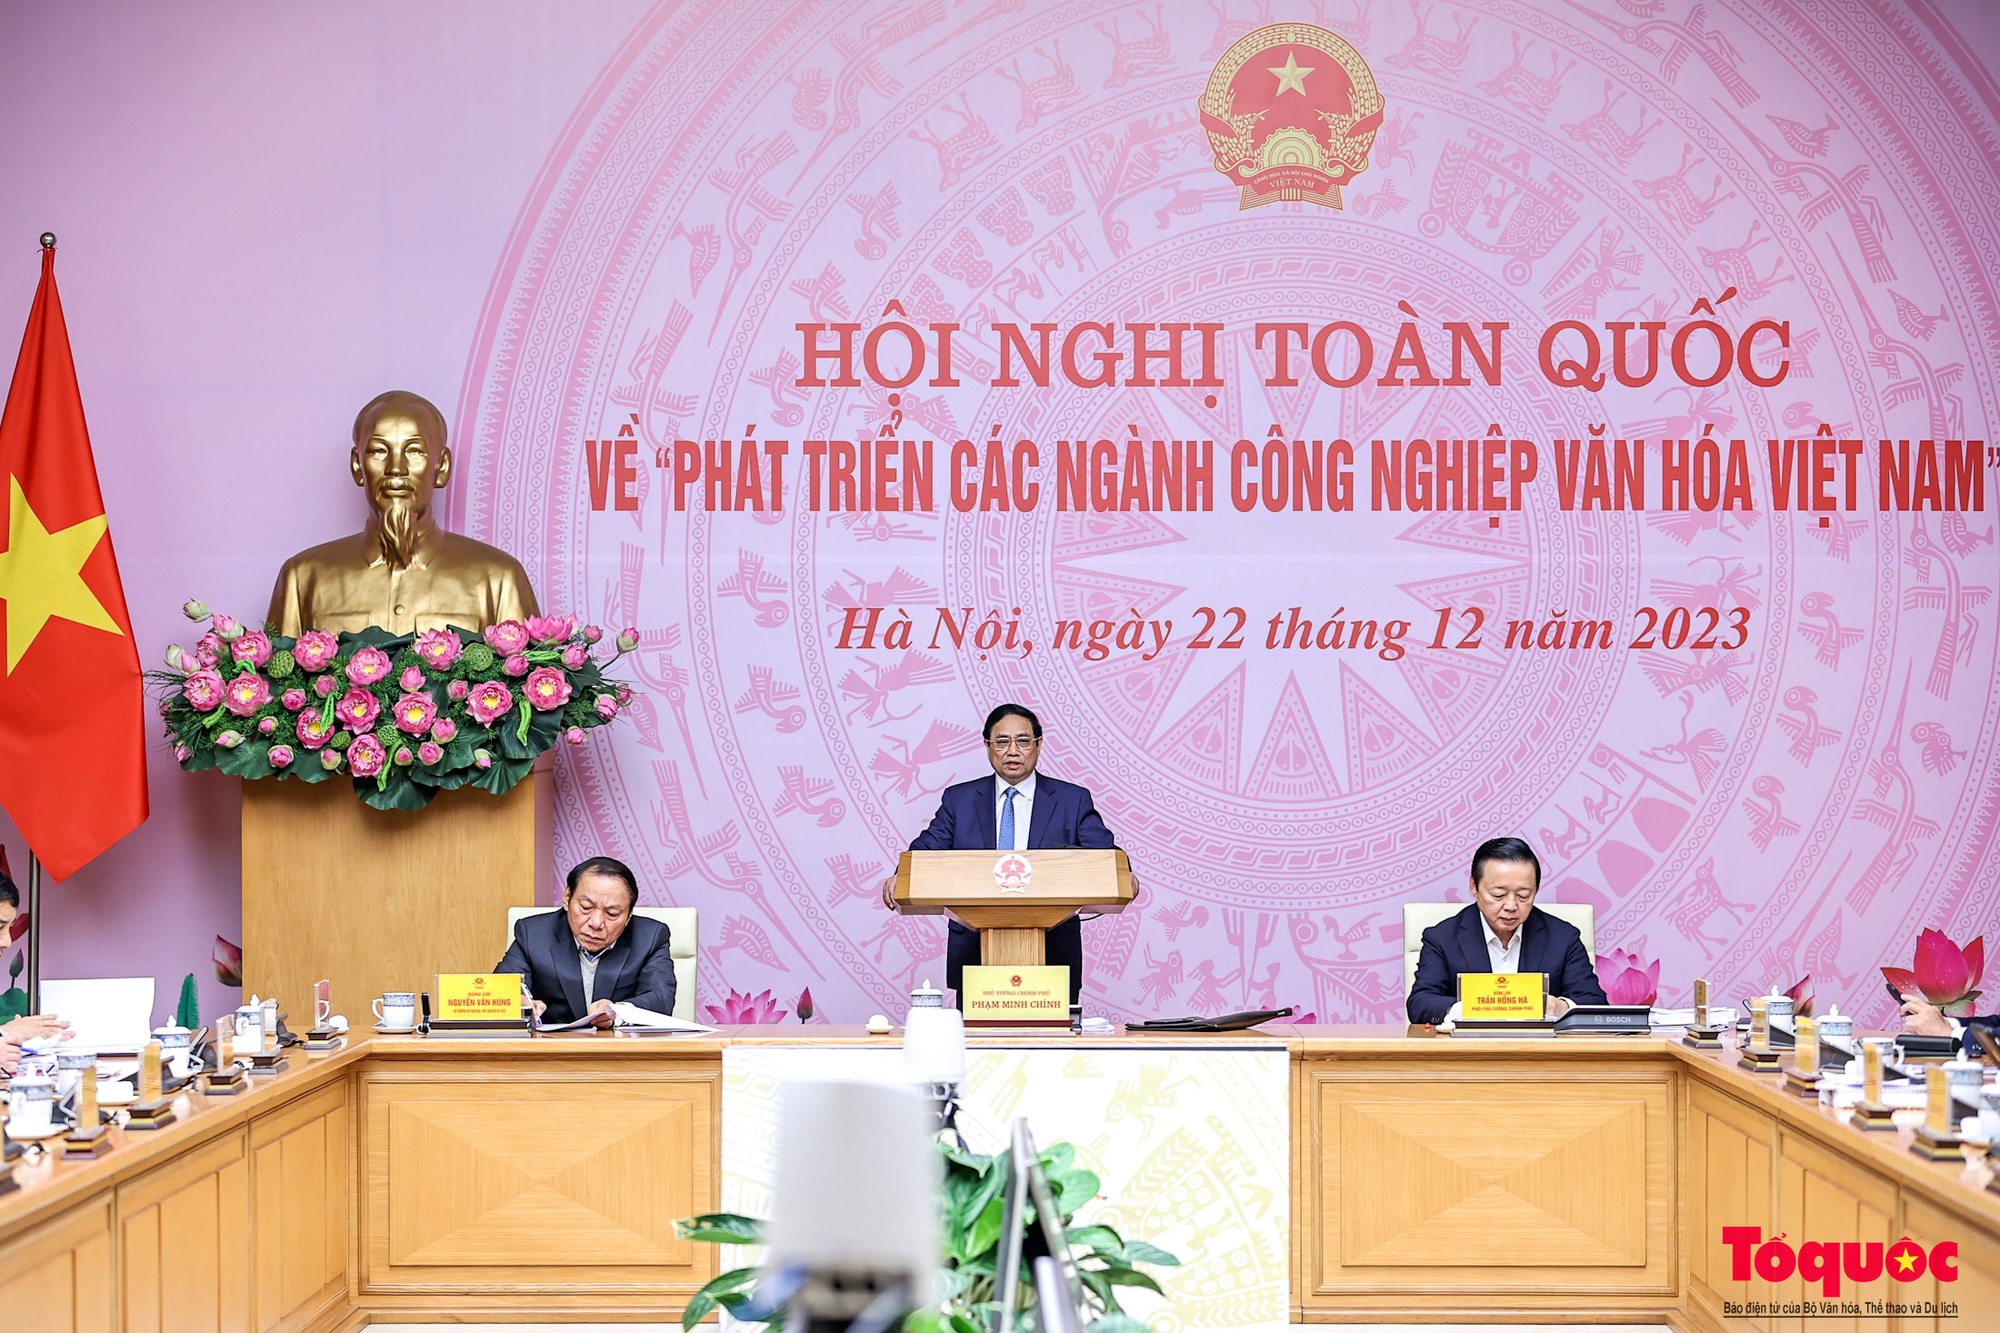 Chùm ảnh: Hội nghị toàn quốc về phát triển các ngành công nghiệp văn hóa Việt Nam - Ảnh 5.